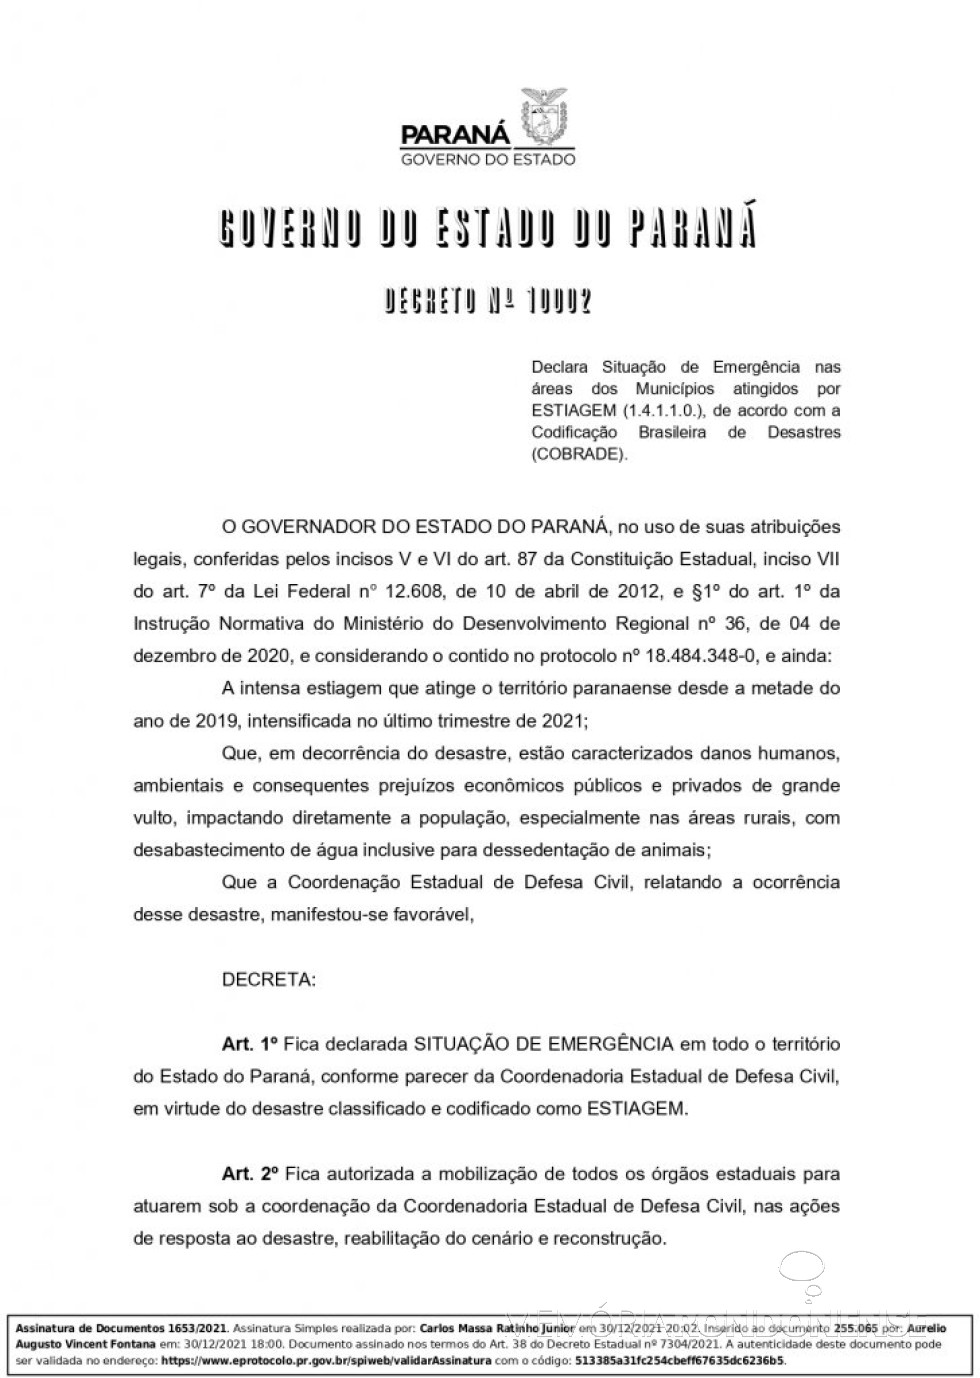 || 1ª página do Decreto Estadual nº 10.002 que declarou situação de emergência em áreas de municípios do Paraná, atinigidas pela forte estiagem, em 30 de dezembro de 2021.
Imagem: Acervo Projeto Memória Rondonense - FOTO 16 -